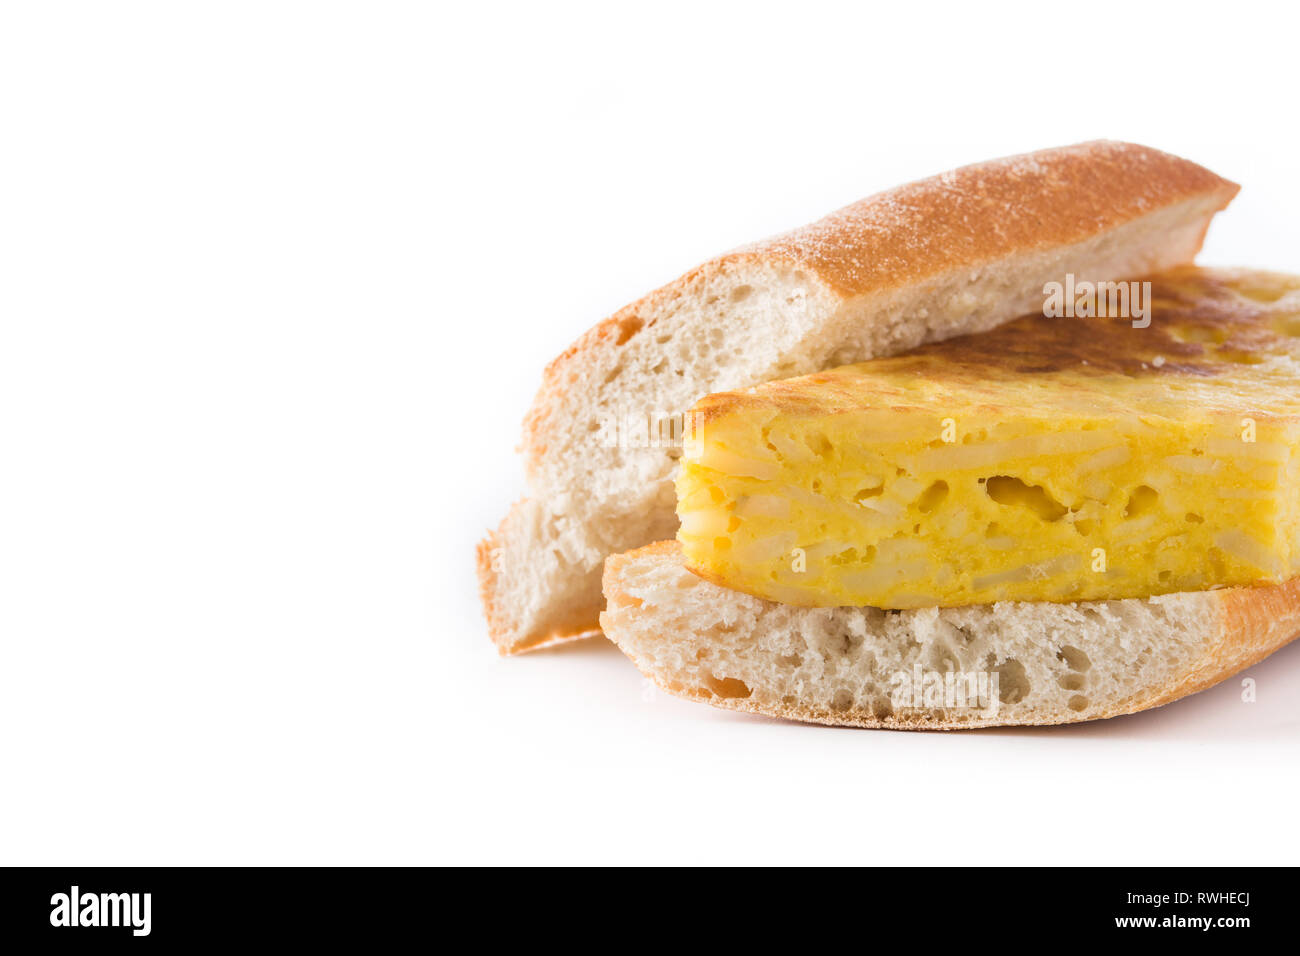 Bocadillo de tortilla española. Spanish potato omelette sandwich isolated on white background. Copyspace Stock Photo